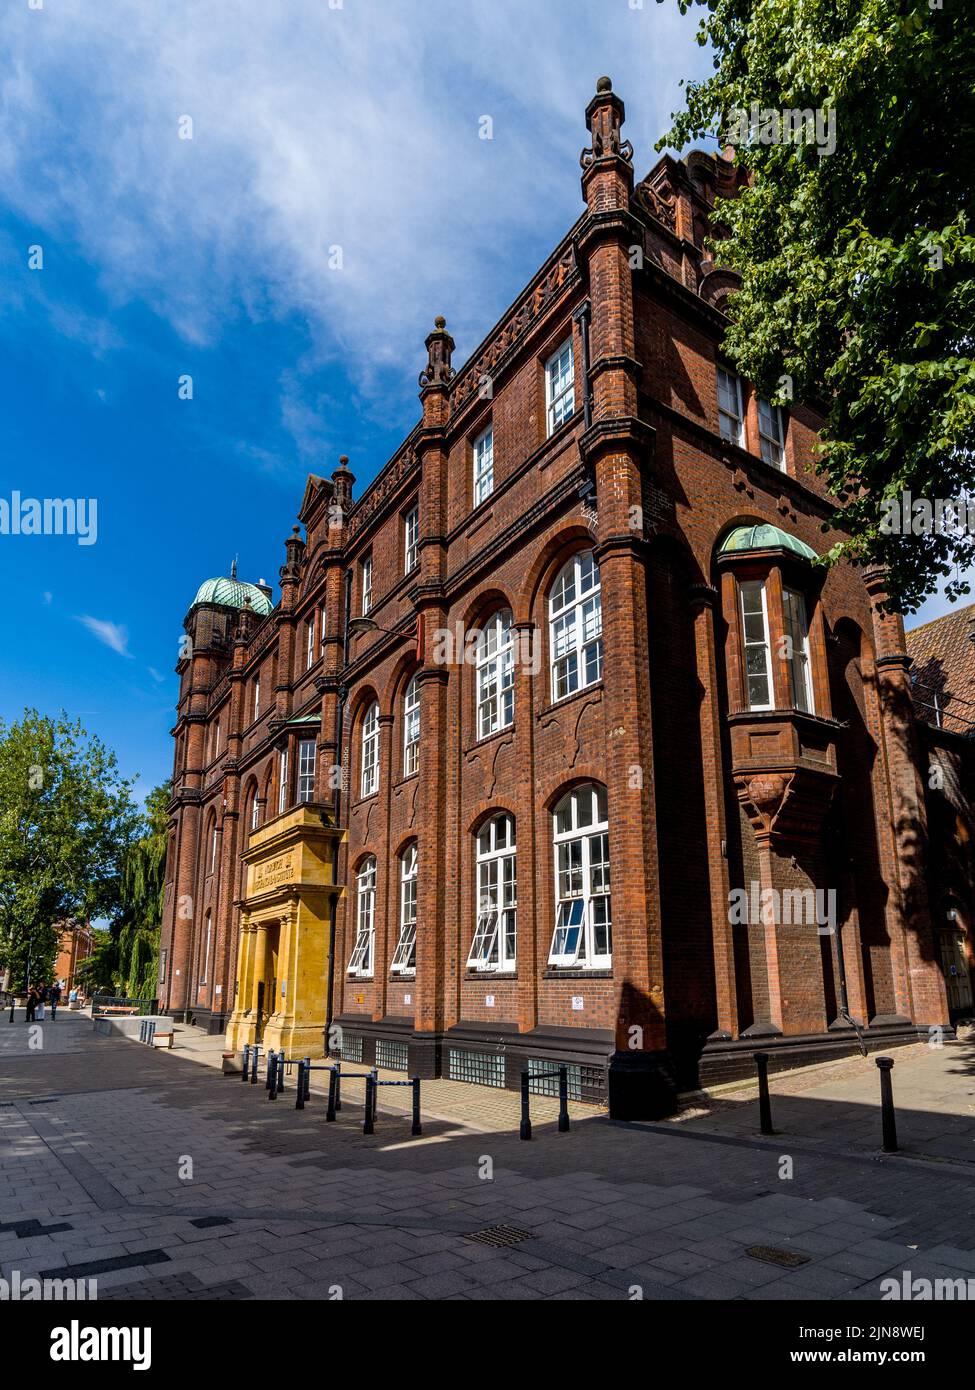 Université des arts de Norwich, édifice St George. Ancien Institut technique de Norwich, le bâtiment a ouvert ses portes en 1899. NUA Norwich. Banque D'Images